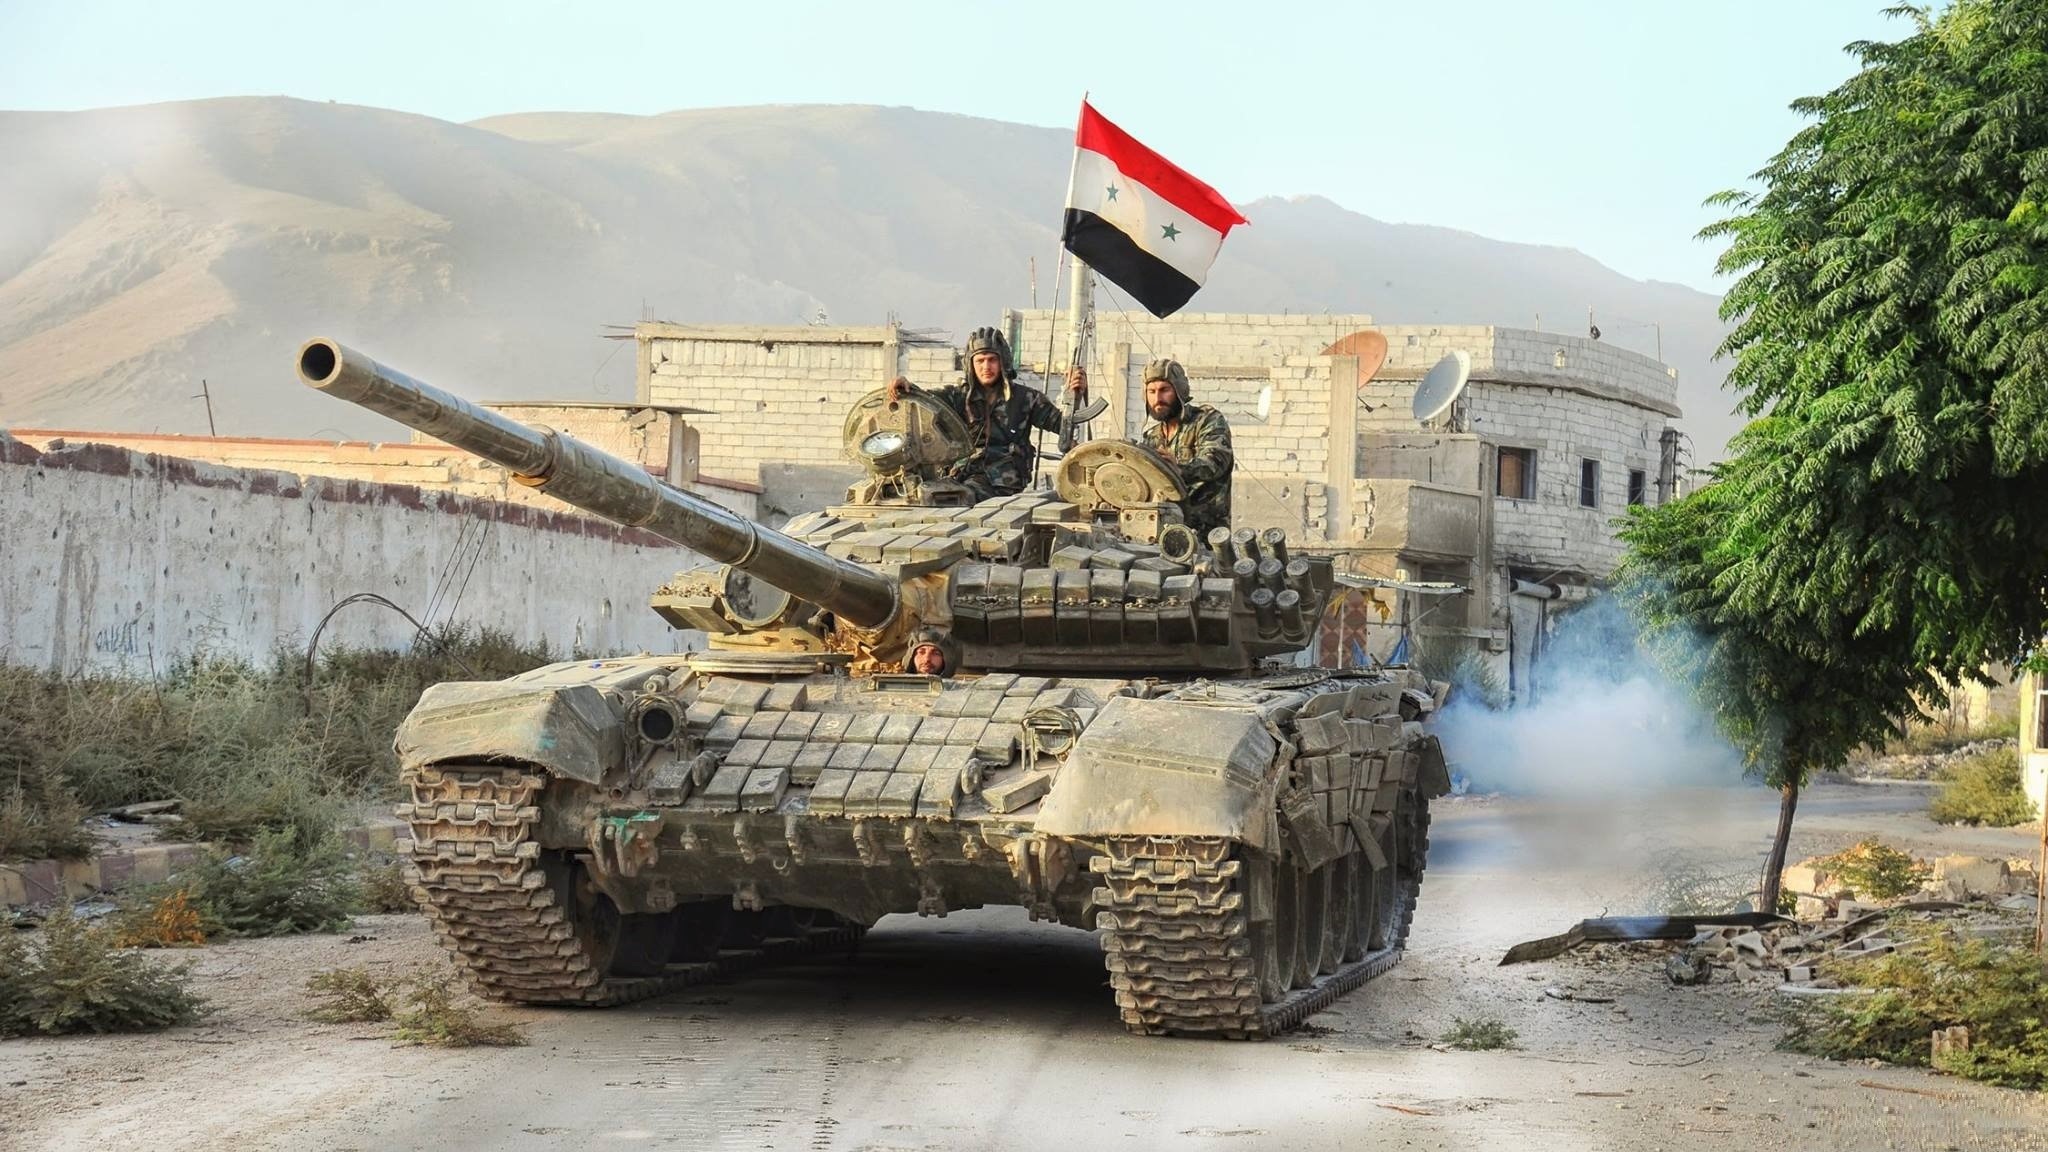 Hasil gambar untuk military attack aleppo syria